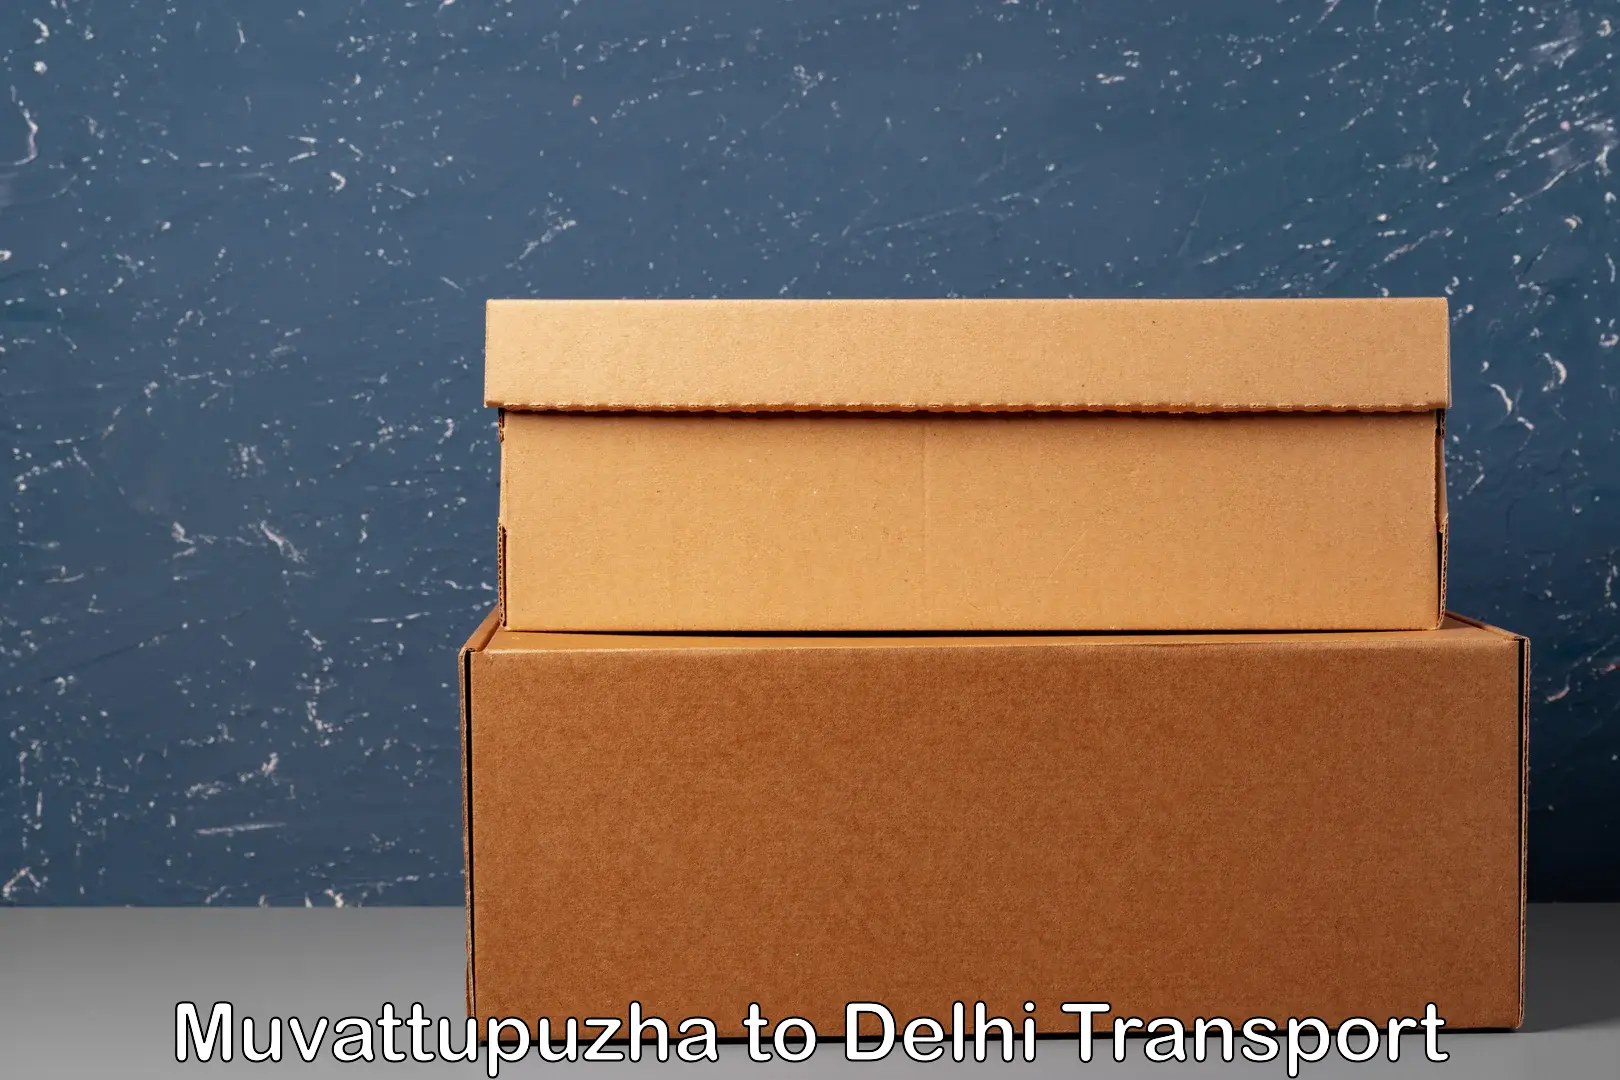 Bike shifting service Muvattupuzha to Delhi